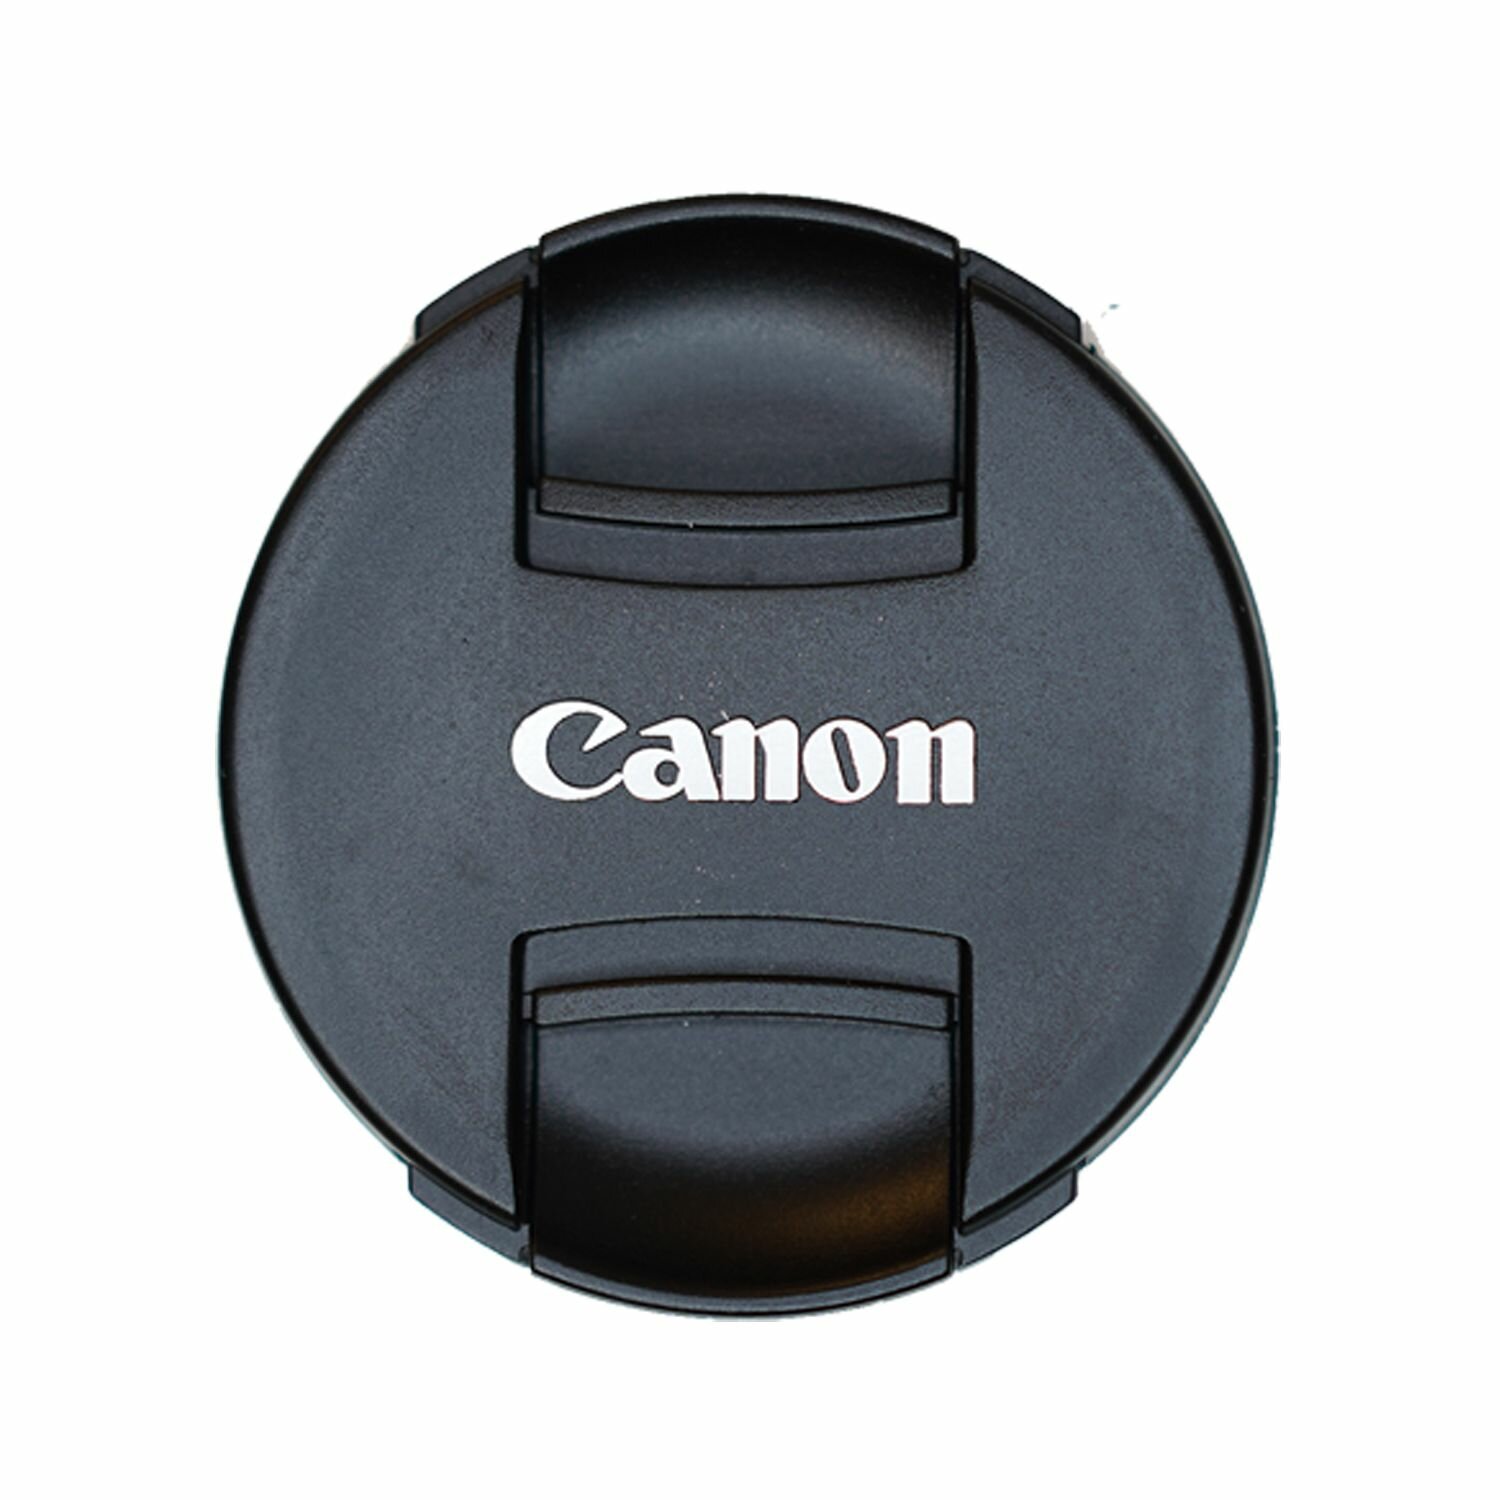 Защитная крышка 52 мм для объектива с надписью "Canon"